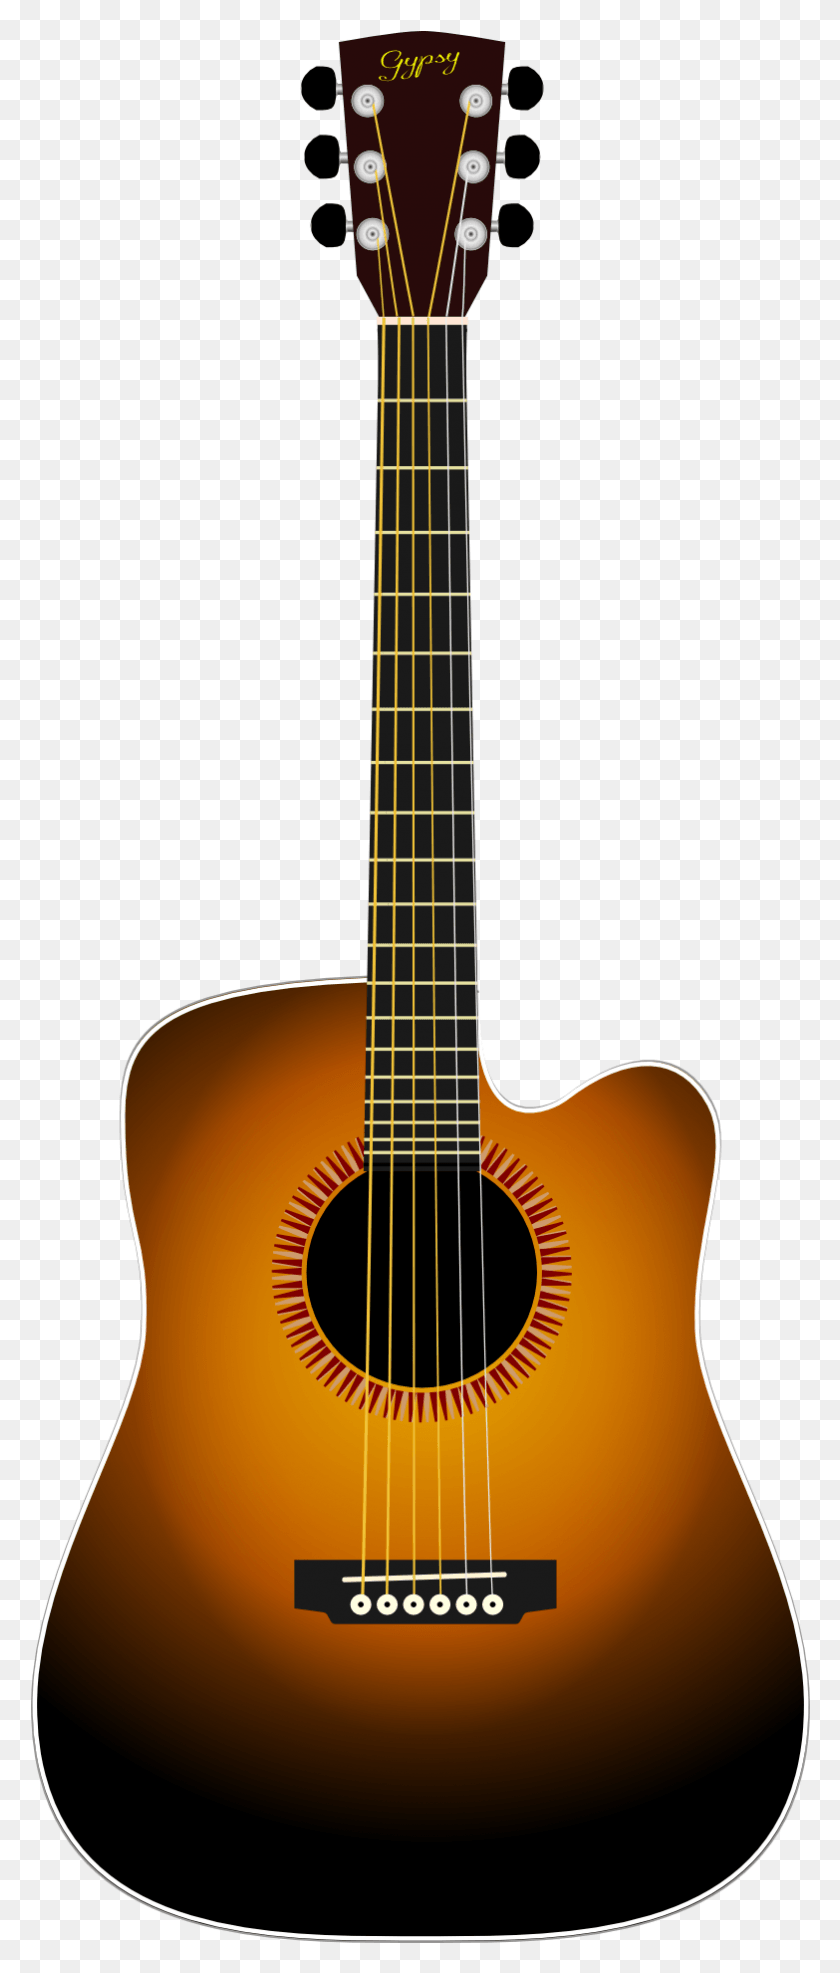 783x1921 Descargar Png Instrumento Musical Marrón Negro Guitarra Acústica Dibujo Guitarra Acústica, Actividades De Ocio, Instrumento Musical, Bajo Hd Png